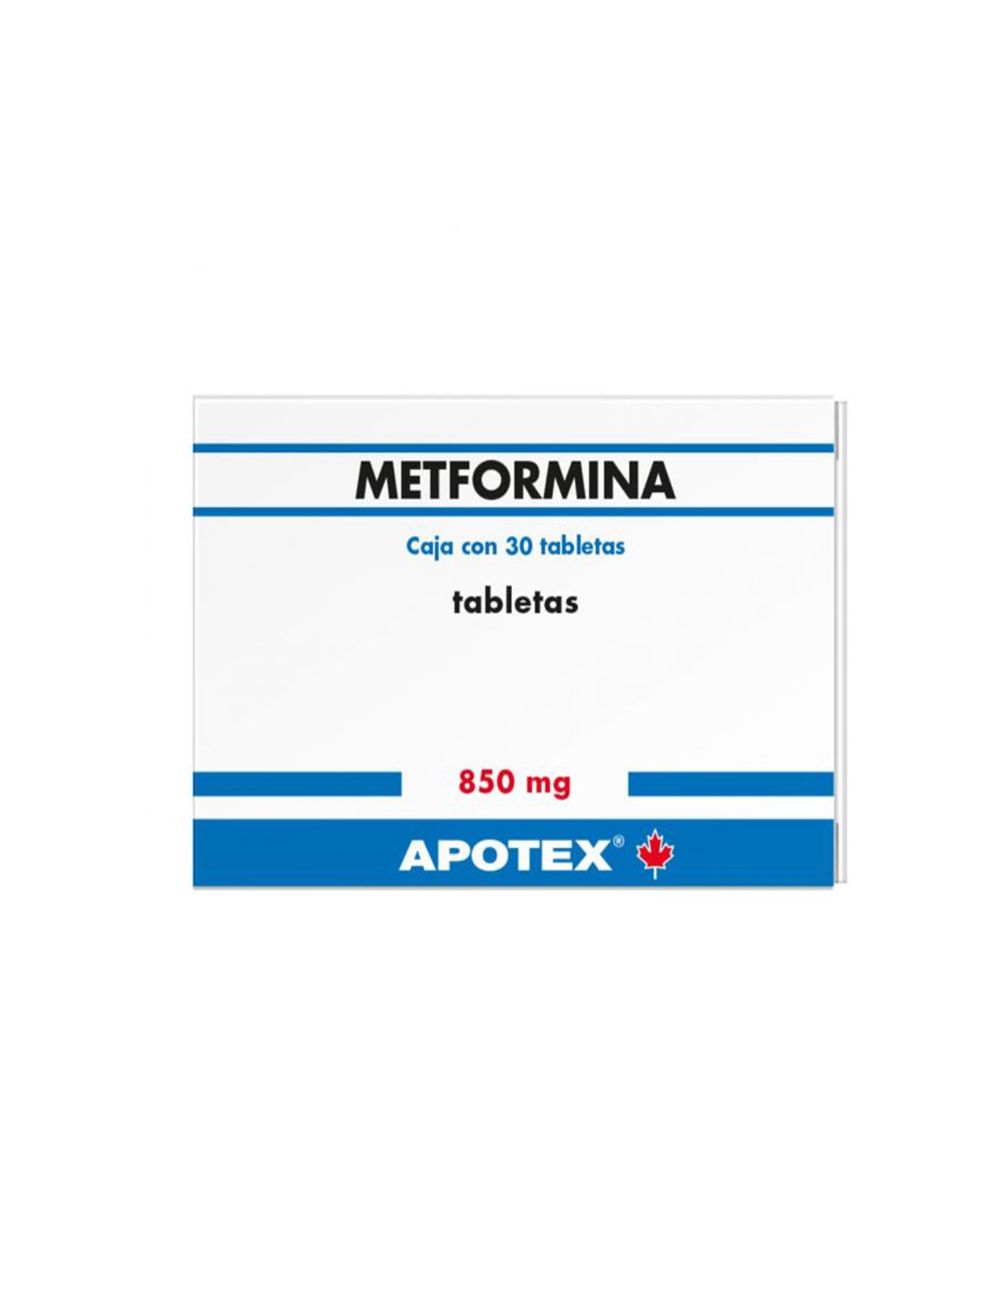 Metformina 850 mg 3pack de 30 tabletas cada uno